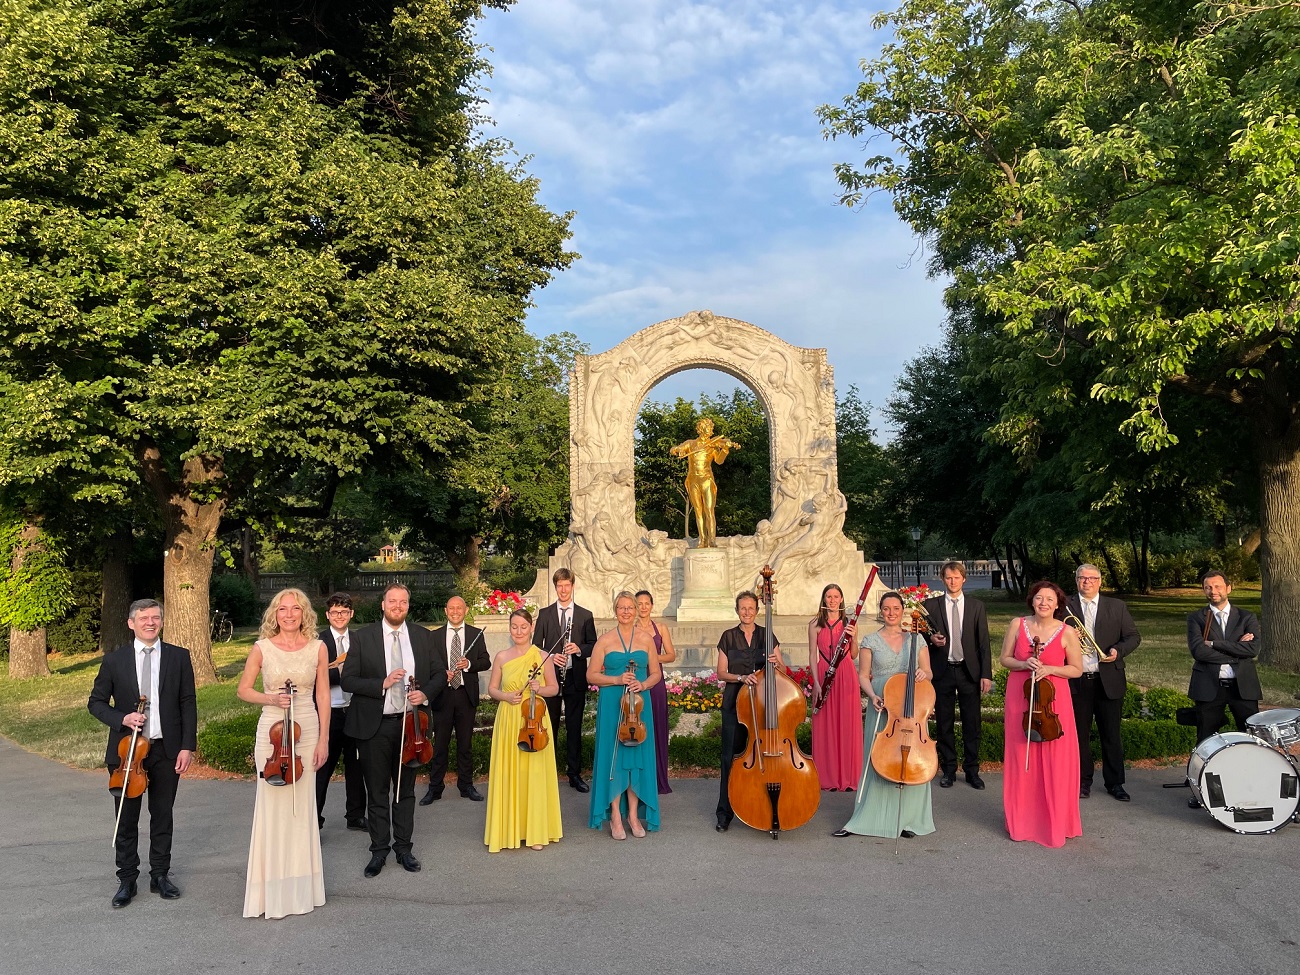 Световноизвестният оркестър на замъка “Шьонбрун” разказва за конкуренцията между баща и синове в грандиозен концерт под звездите 